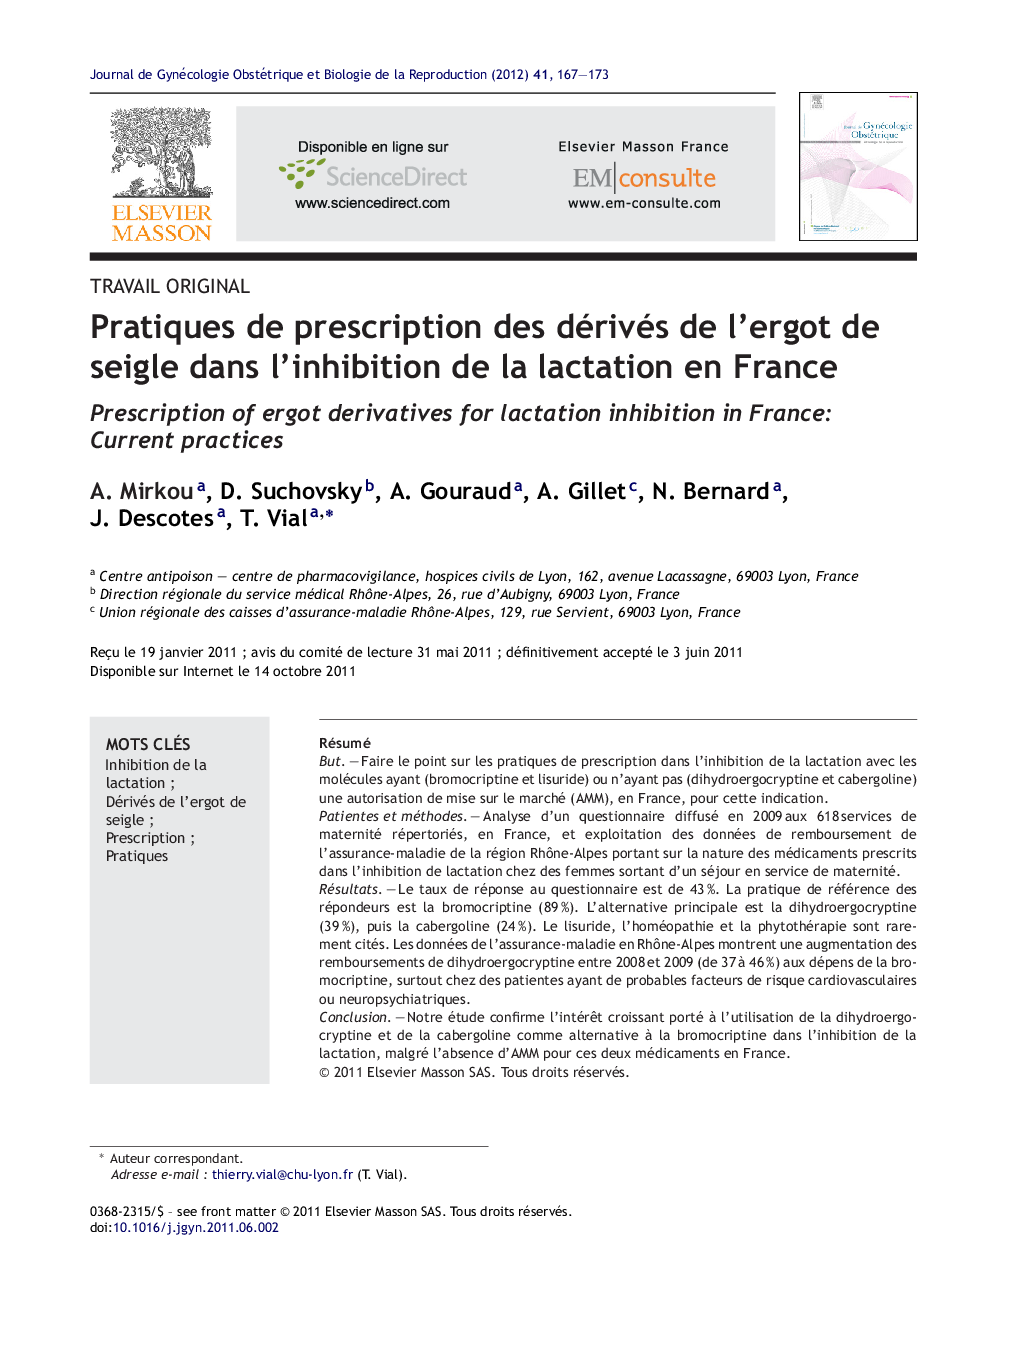 Pratiques de prescription des dérivés de l'ergot de seigle dans l'inhibition de la lactation en France